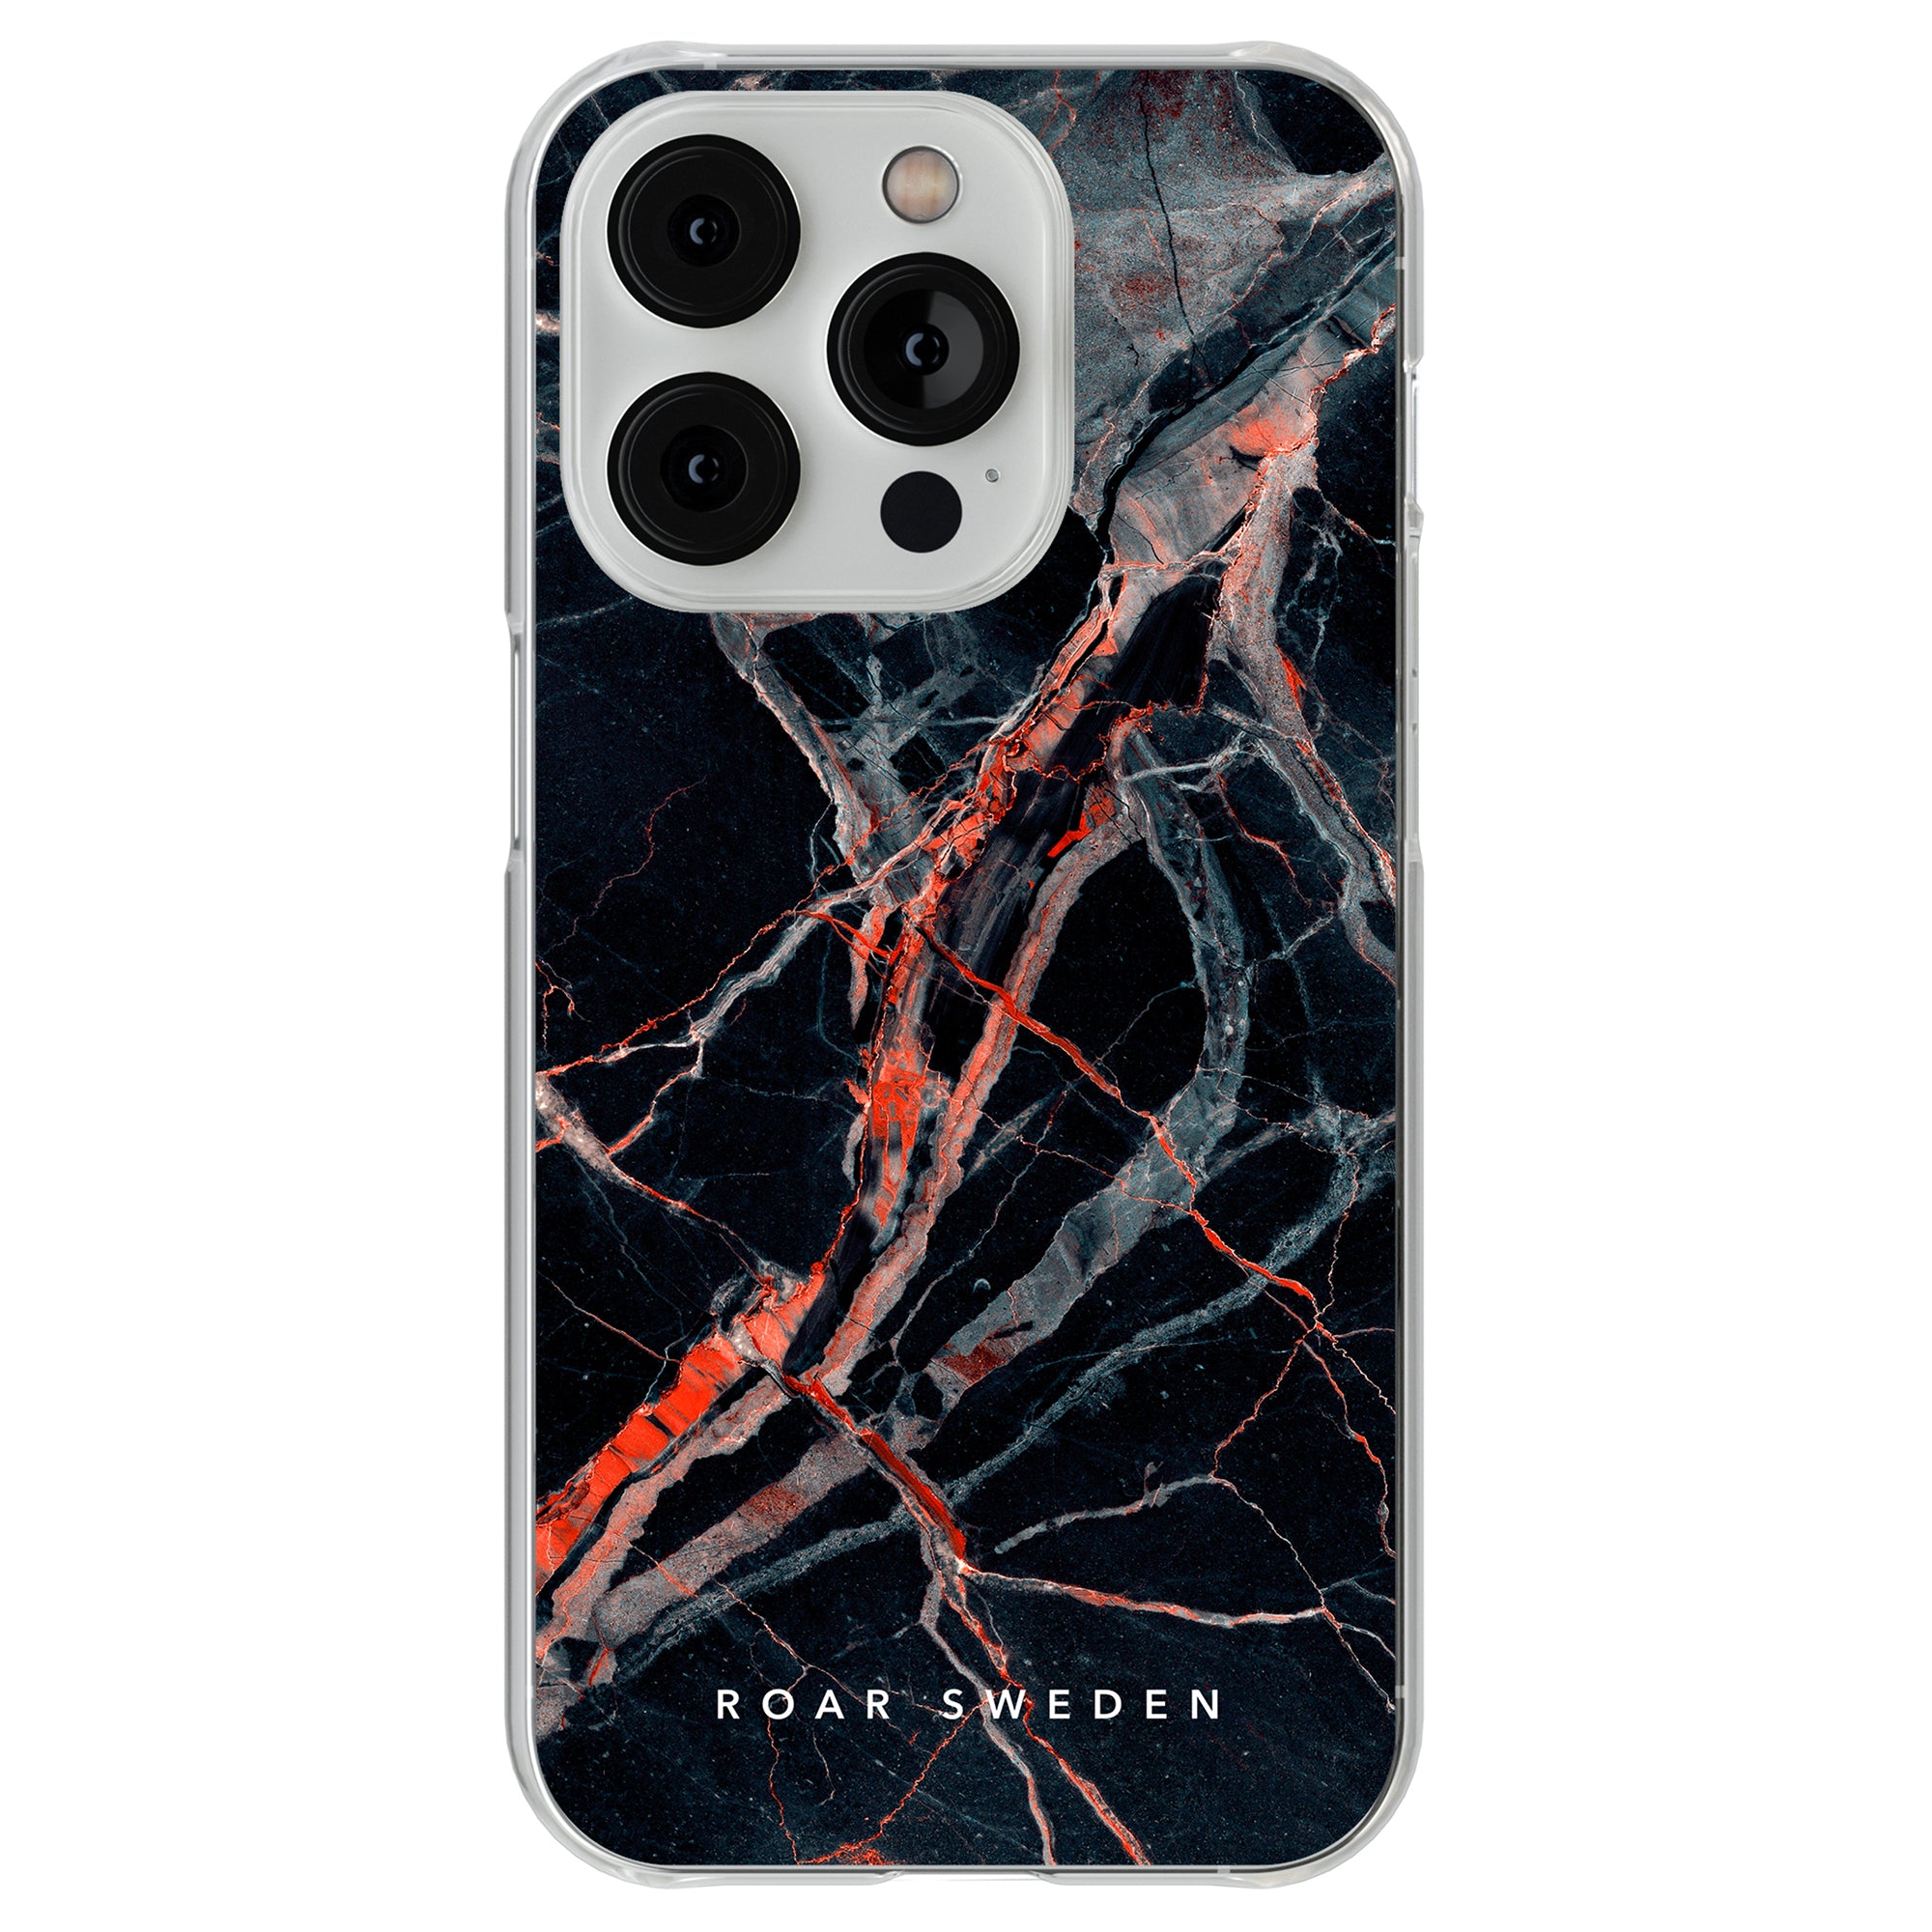 A Veins - Clear Case mobilfodral med svarta och orangea ådror designat för iPhone 11 Pro.